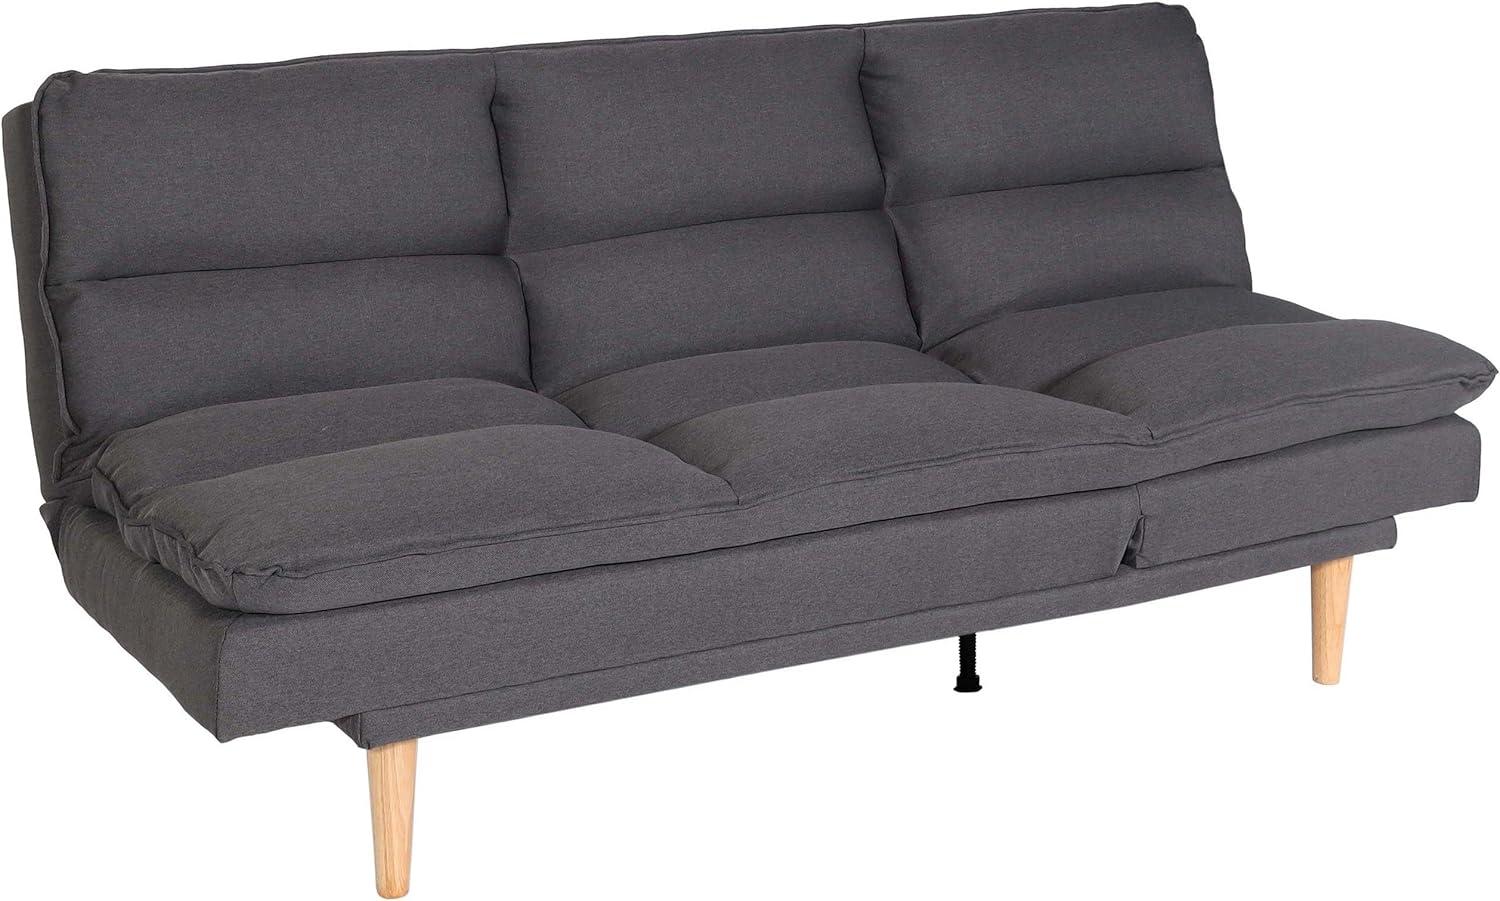 Schlafsofa HWC-M79, Gästebett Schlafcouch Couch Sofa, Schlaffunktion Liegefläche 180x110cm ~ Stoff/Textil dunkelgrau Bild 1